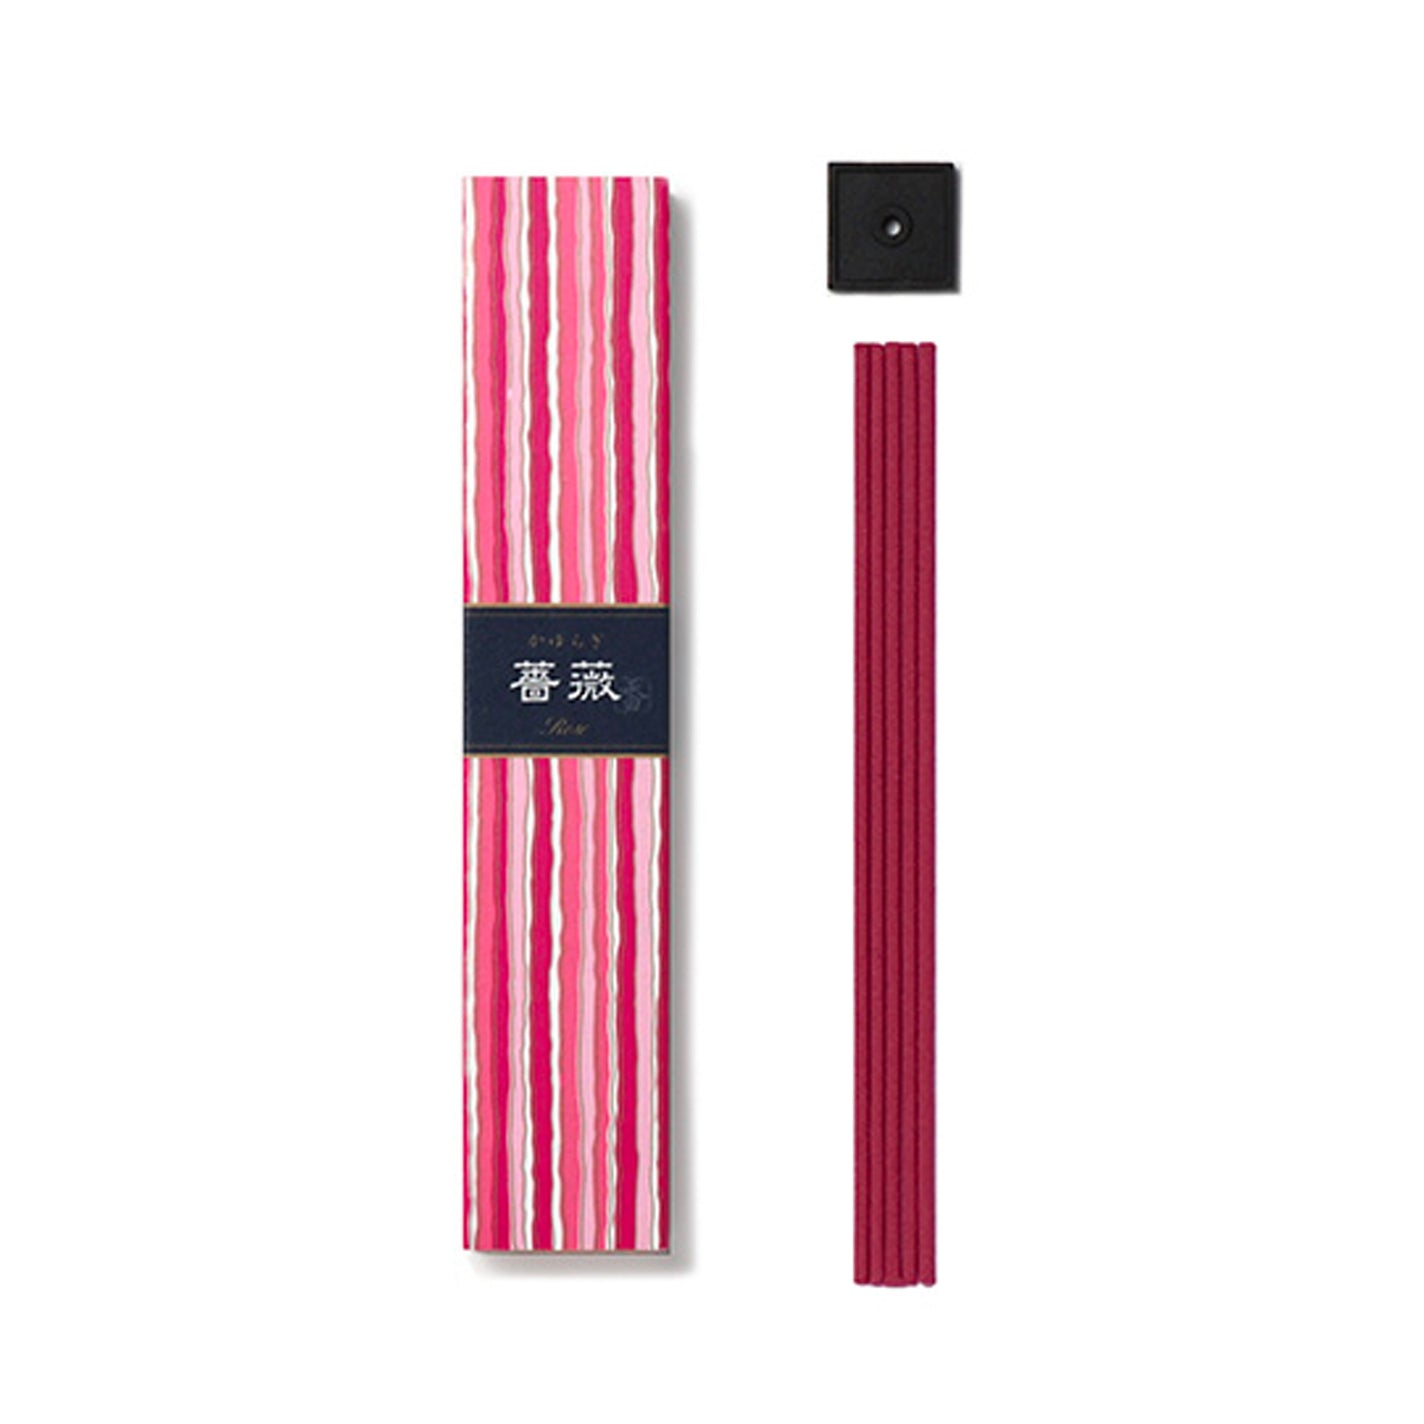 Nippon Kodo Kayuragi Incense Sticks - Rose